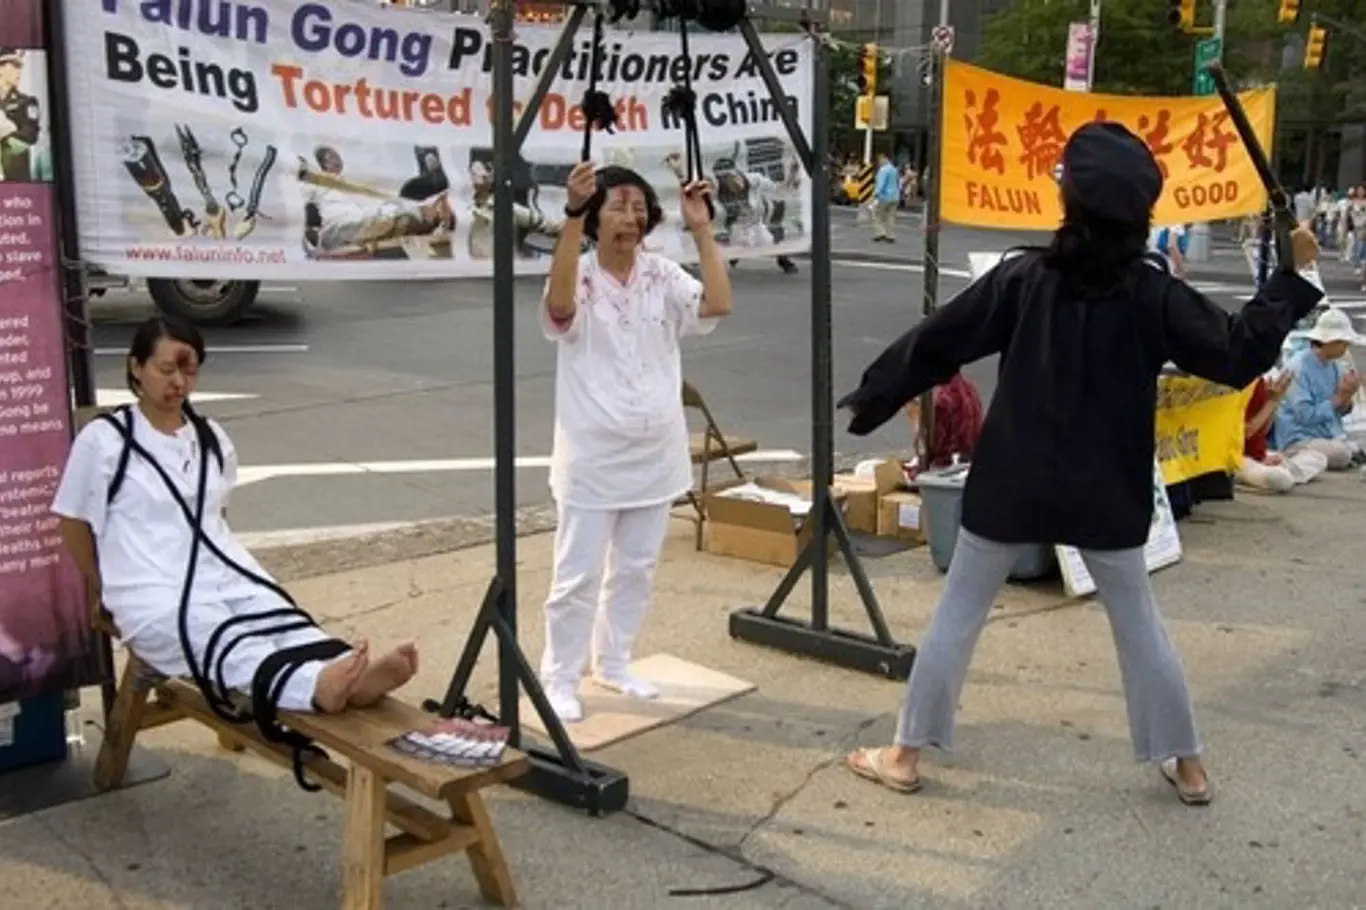 Prostesty proti mučení v čínských věznicích